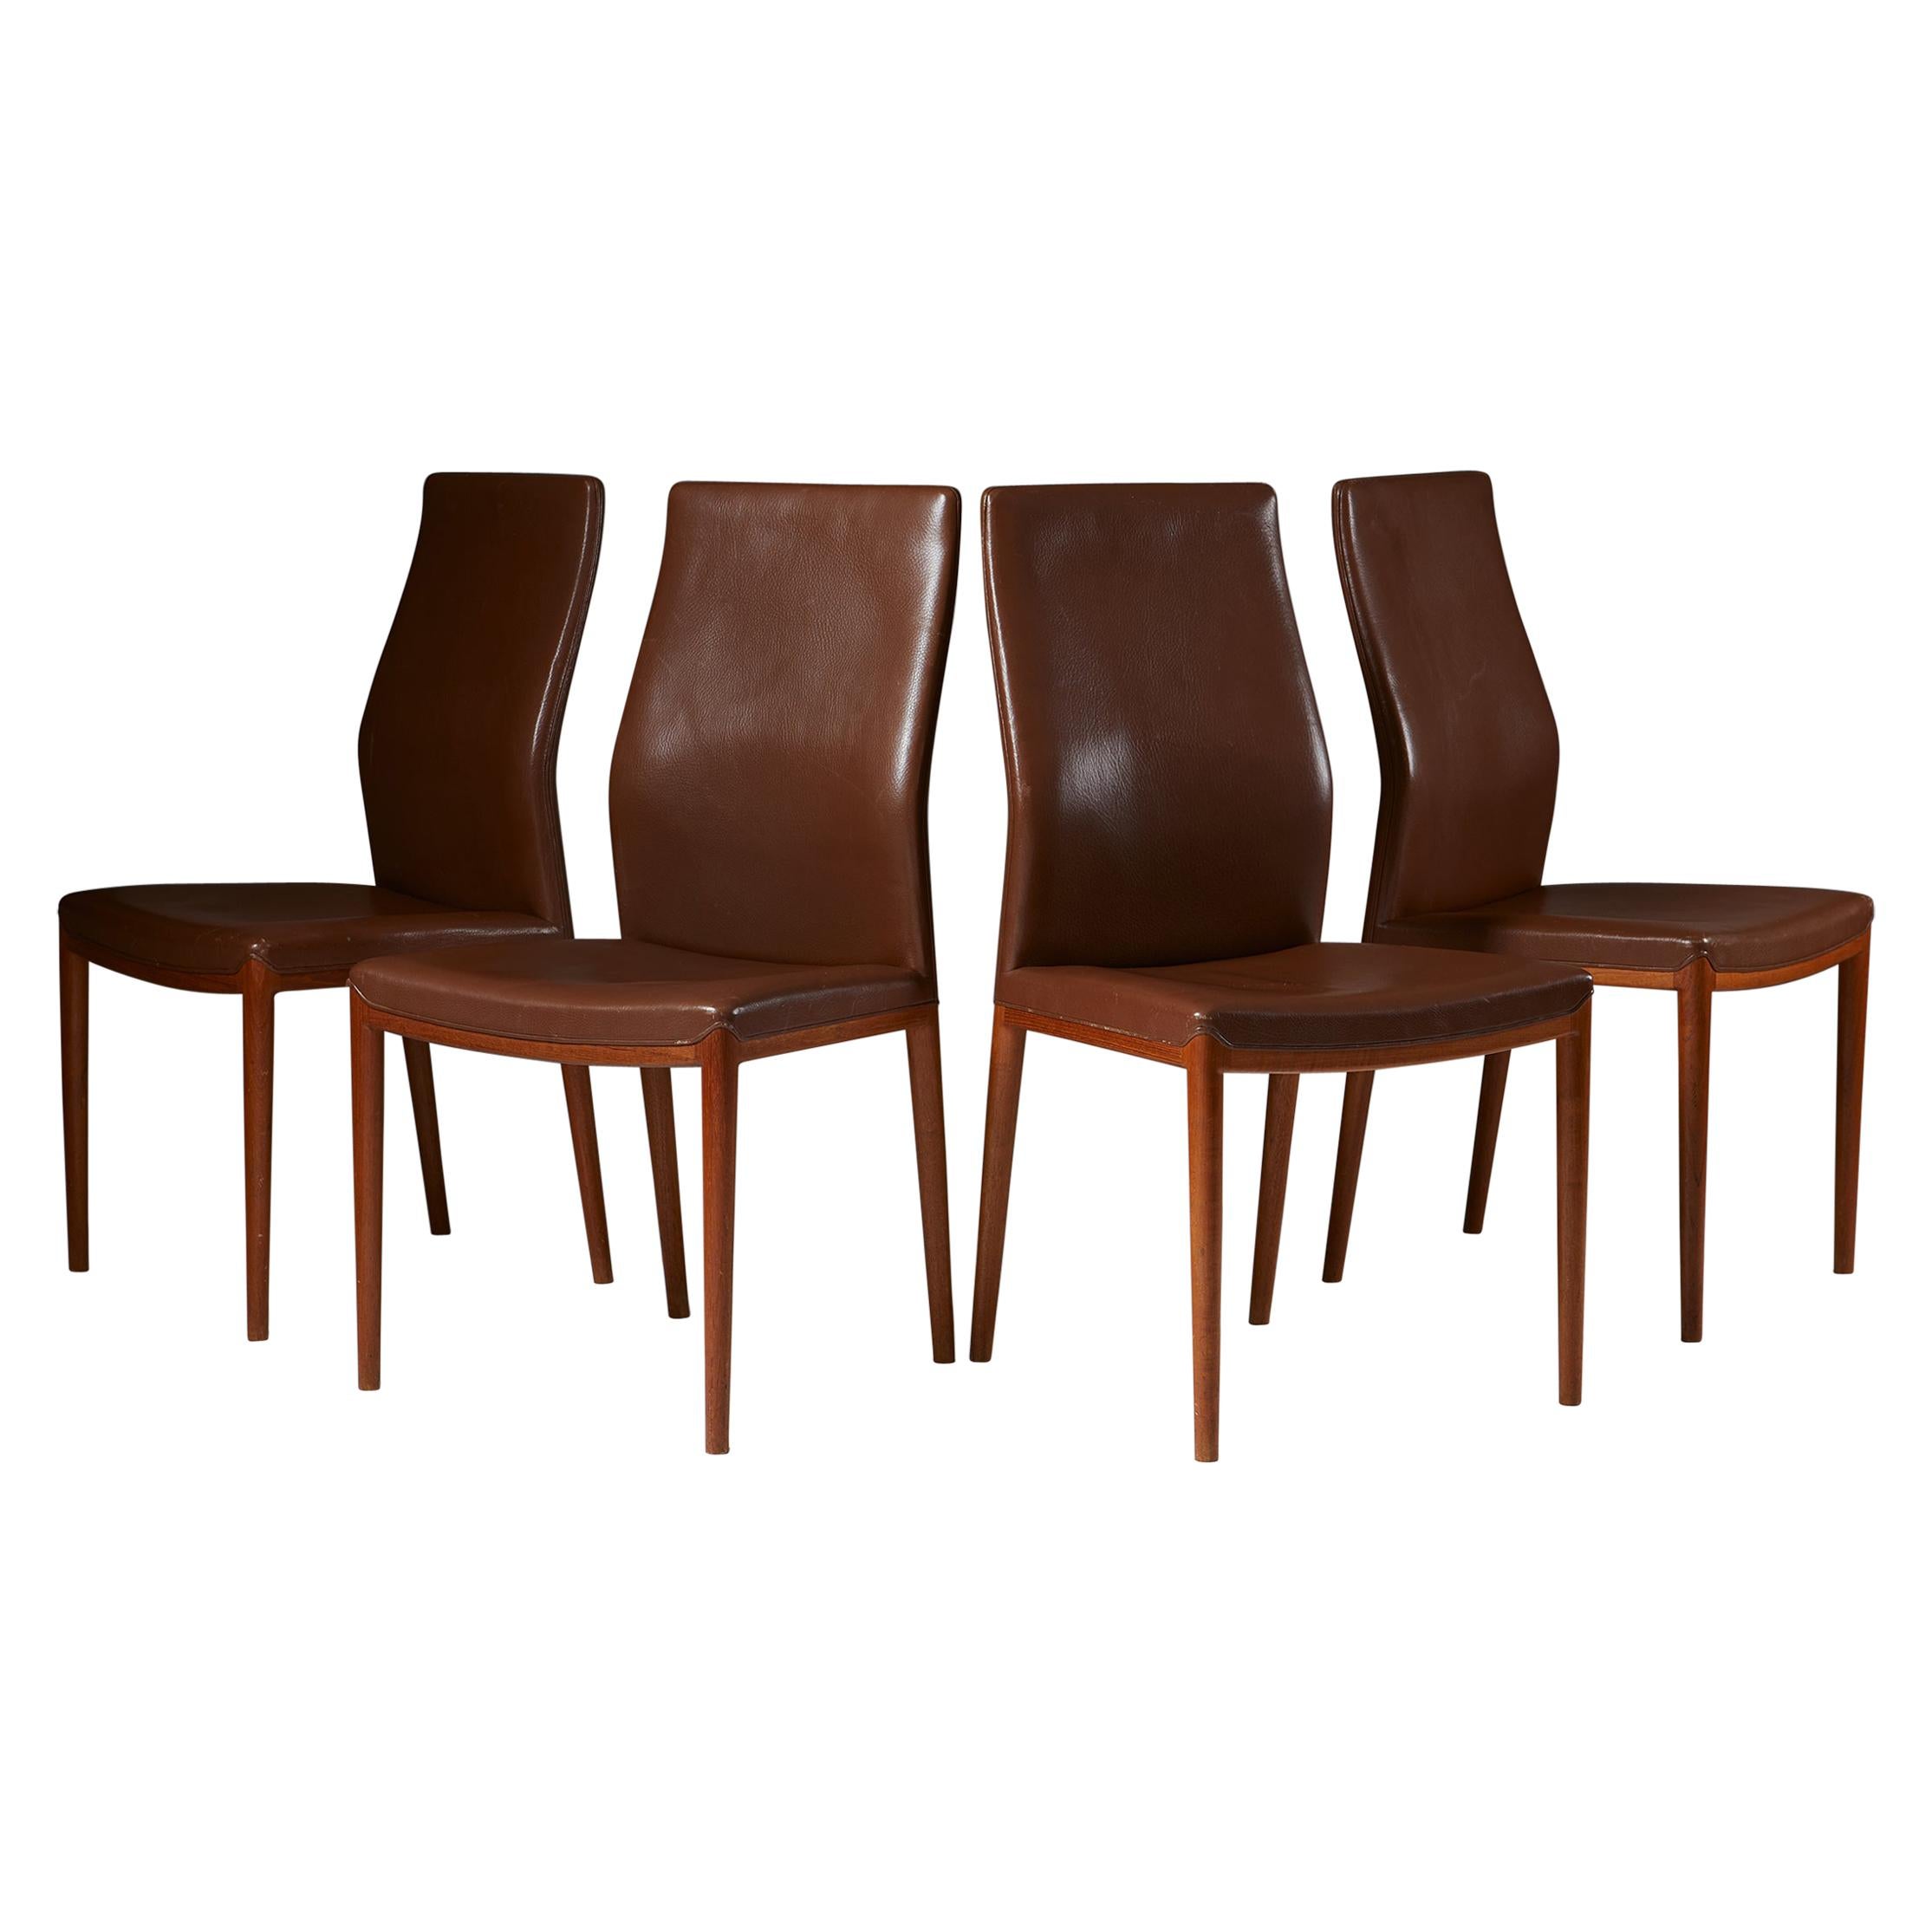 Set of Four Chairs Designed by Helge Vestergaard Jensen for Sören Horn, Denmark